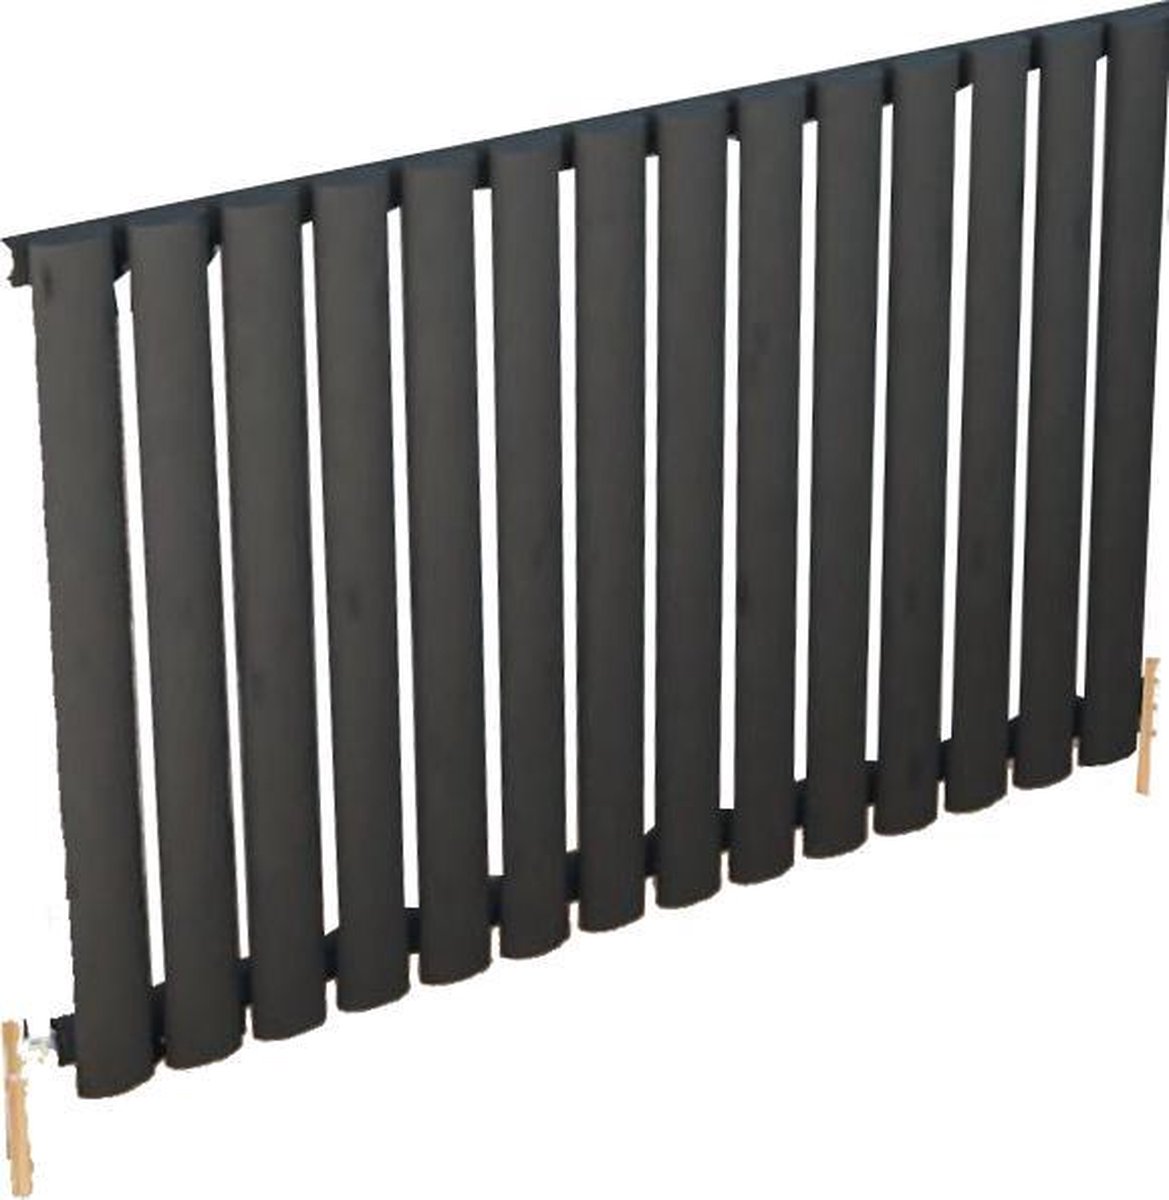 Design radiator horizontaal staal mat antraciet 60x82,5cm 757 watt - Eastbrook Tunstall